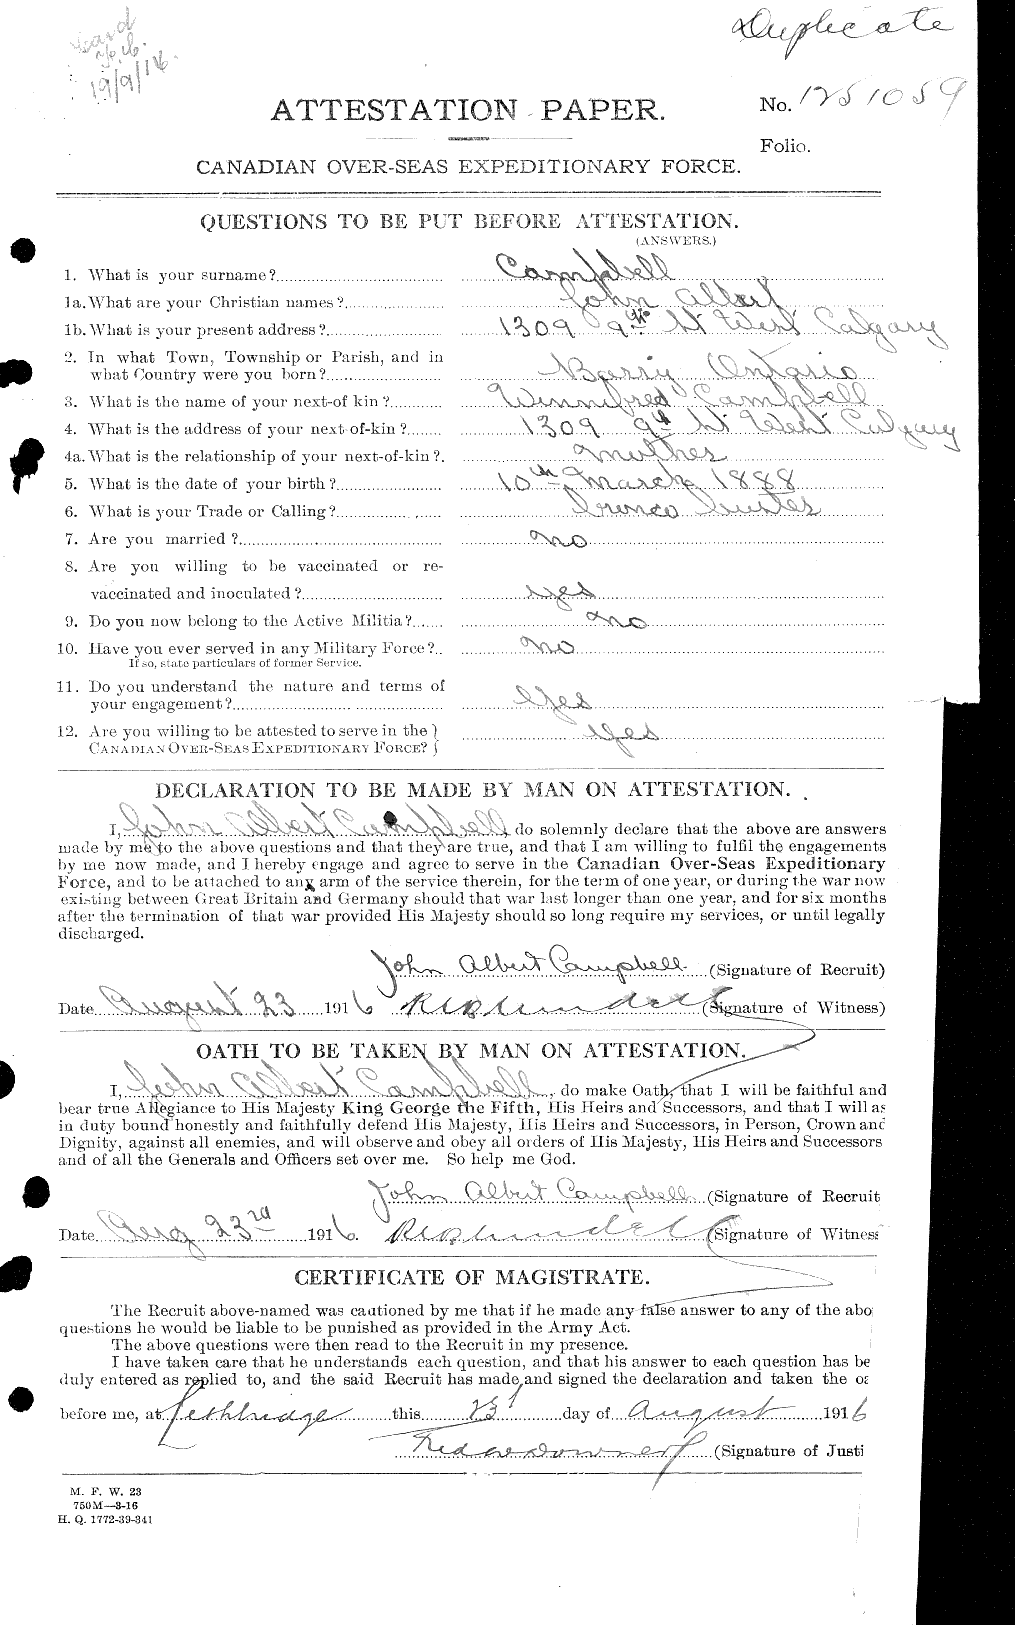 Dossiers du Personnel de la Première Guerre mondiale - CEC 006850a